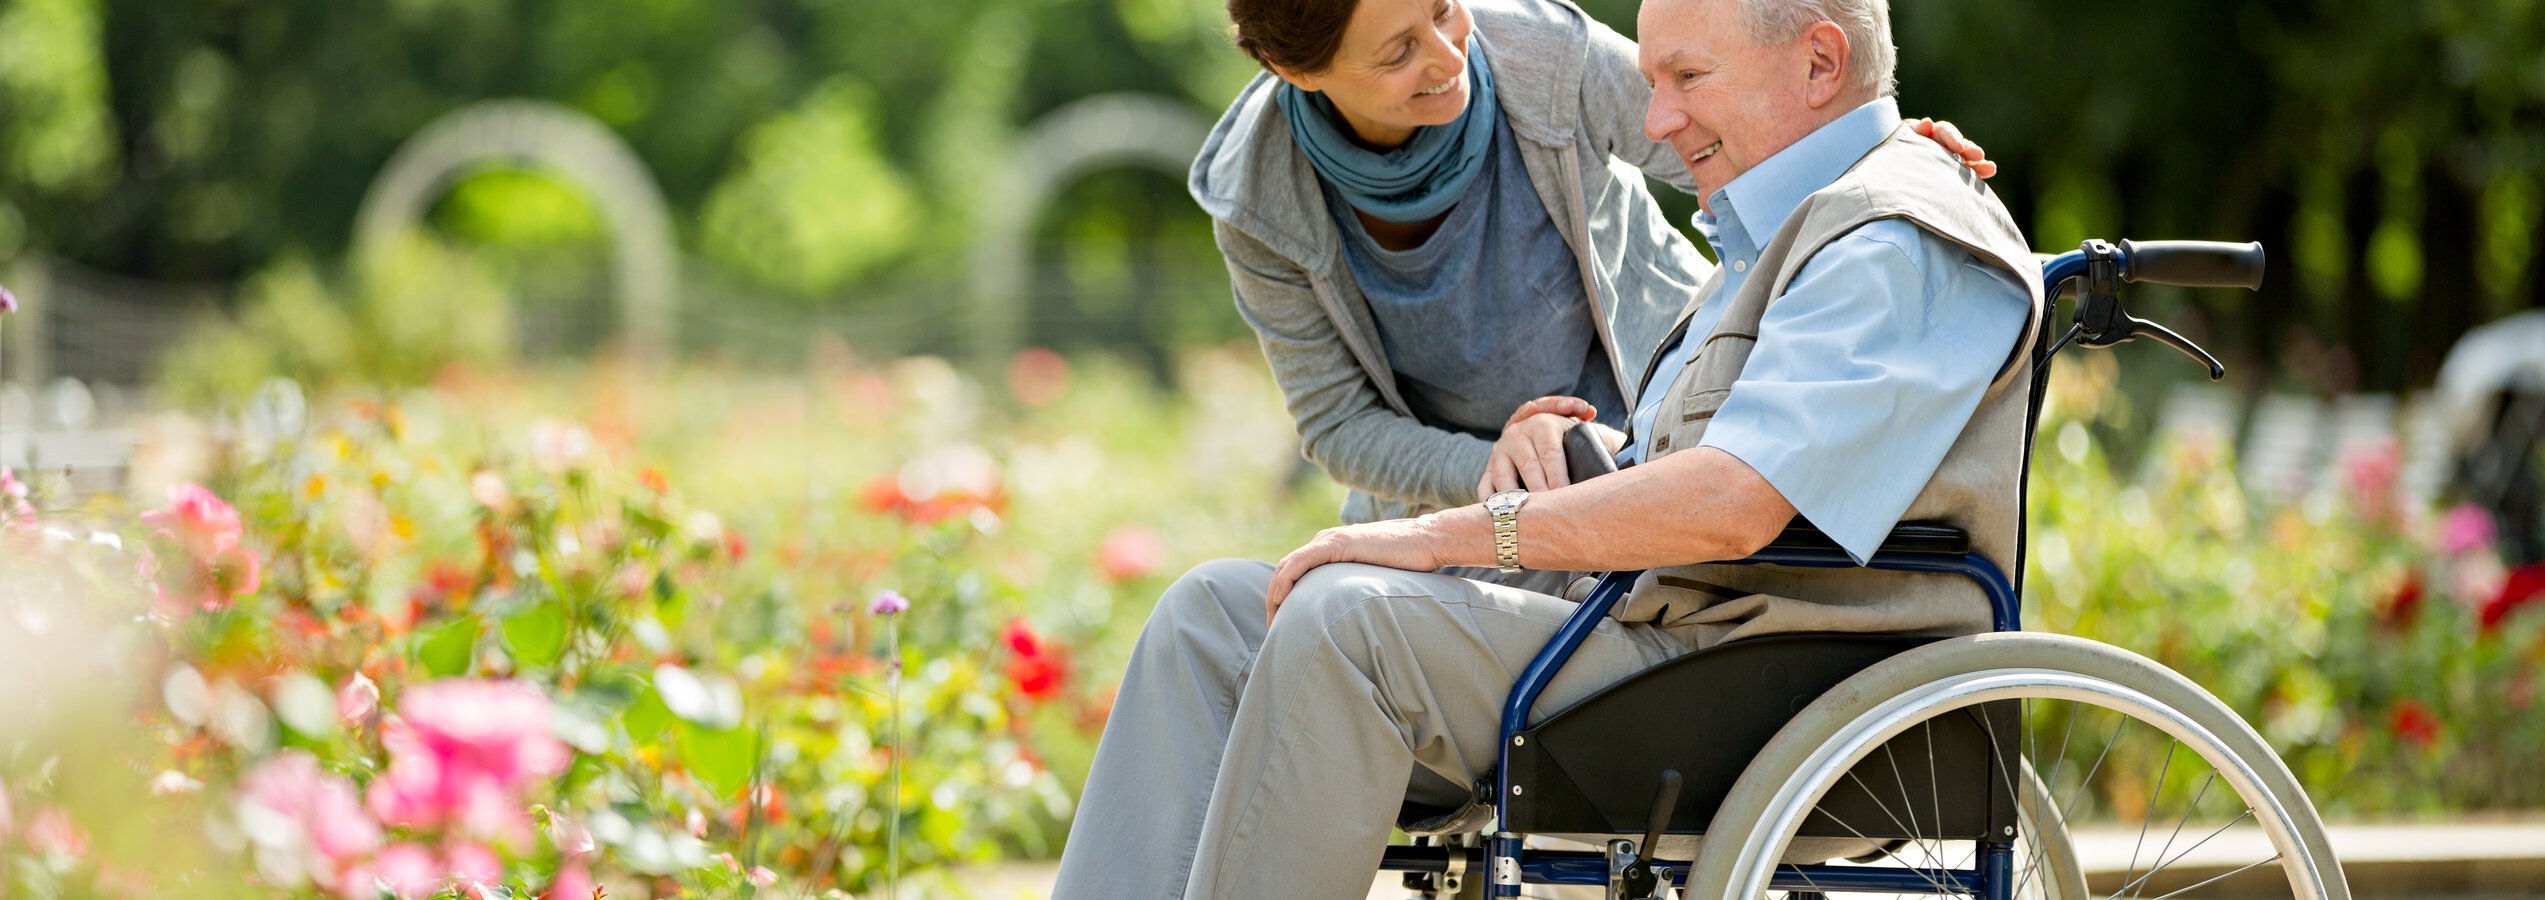 Seniorenbetreuung Jobs - Pflegerin und Rollstuhlfahrer lachend in einem Park | © Fred Froese/Getty Images iStock 599257344